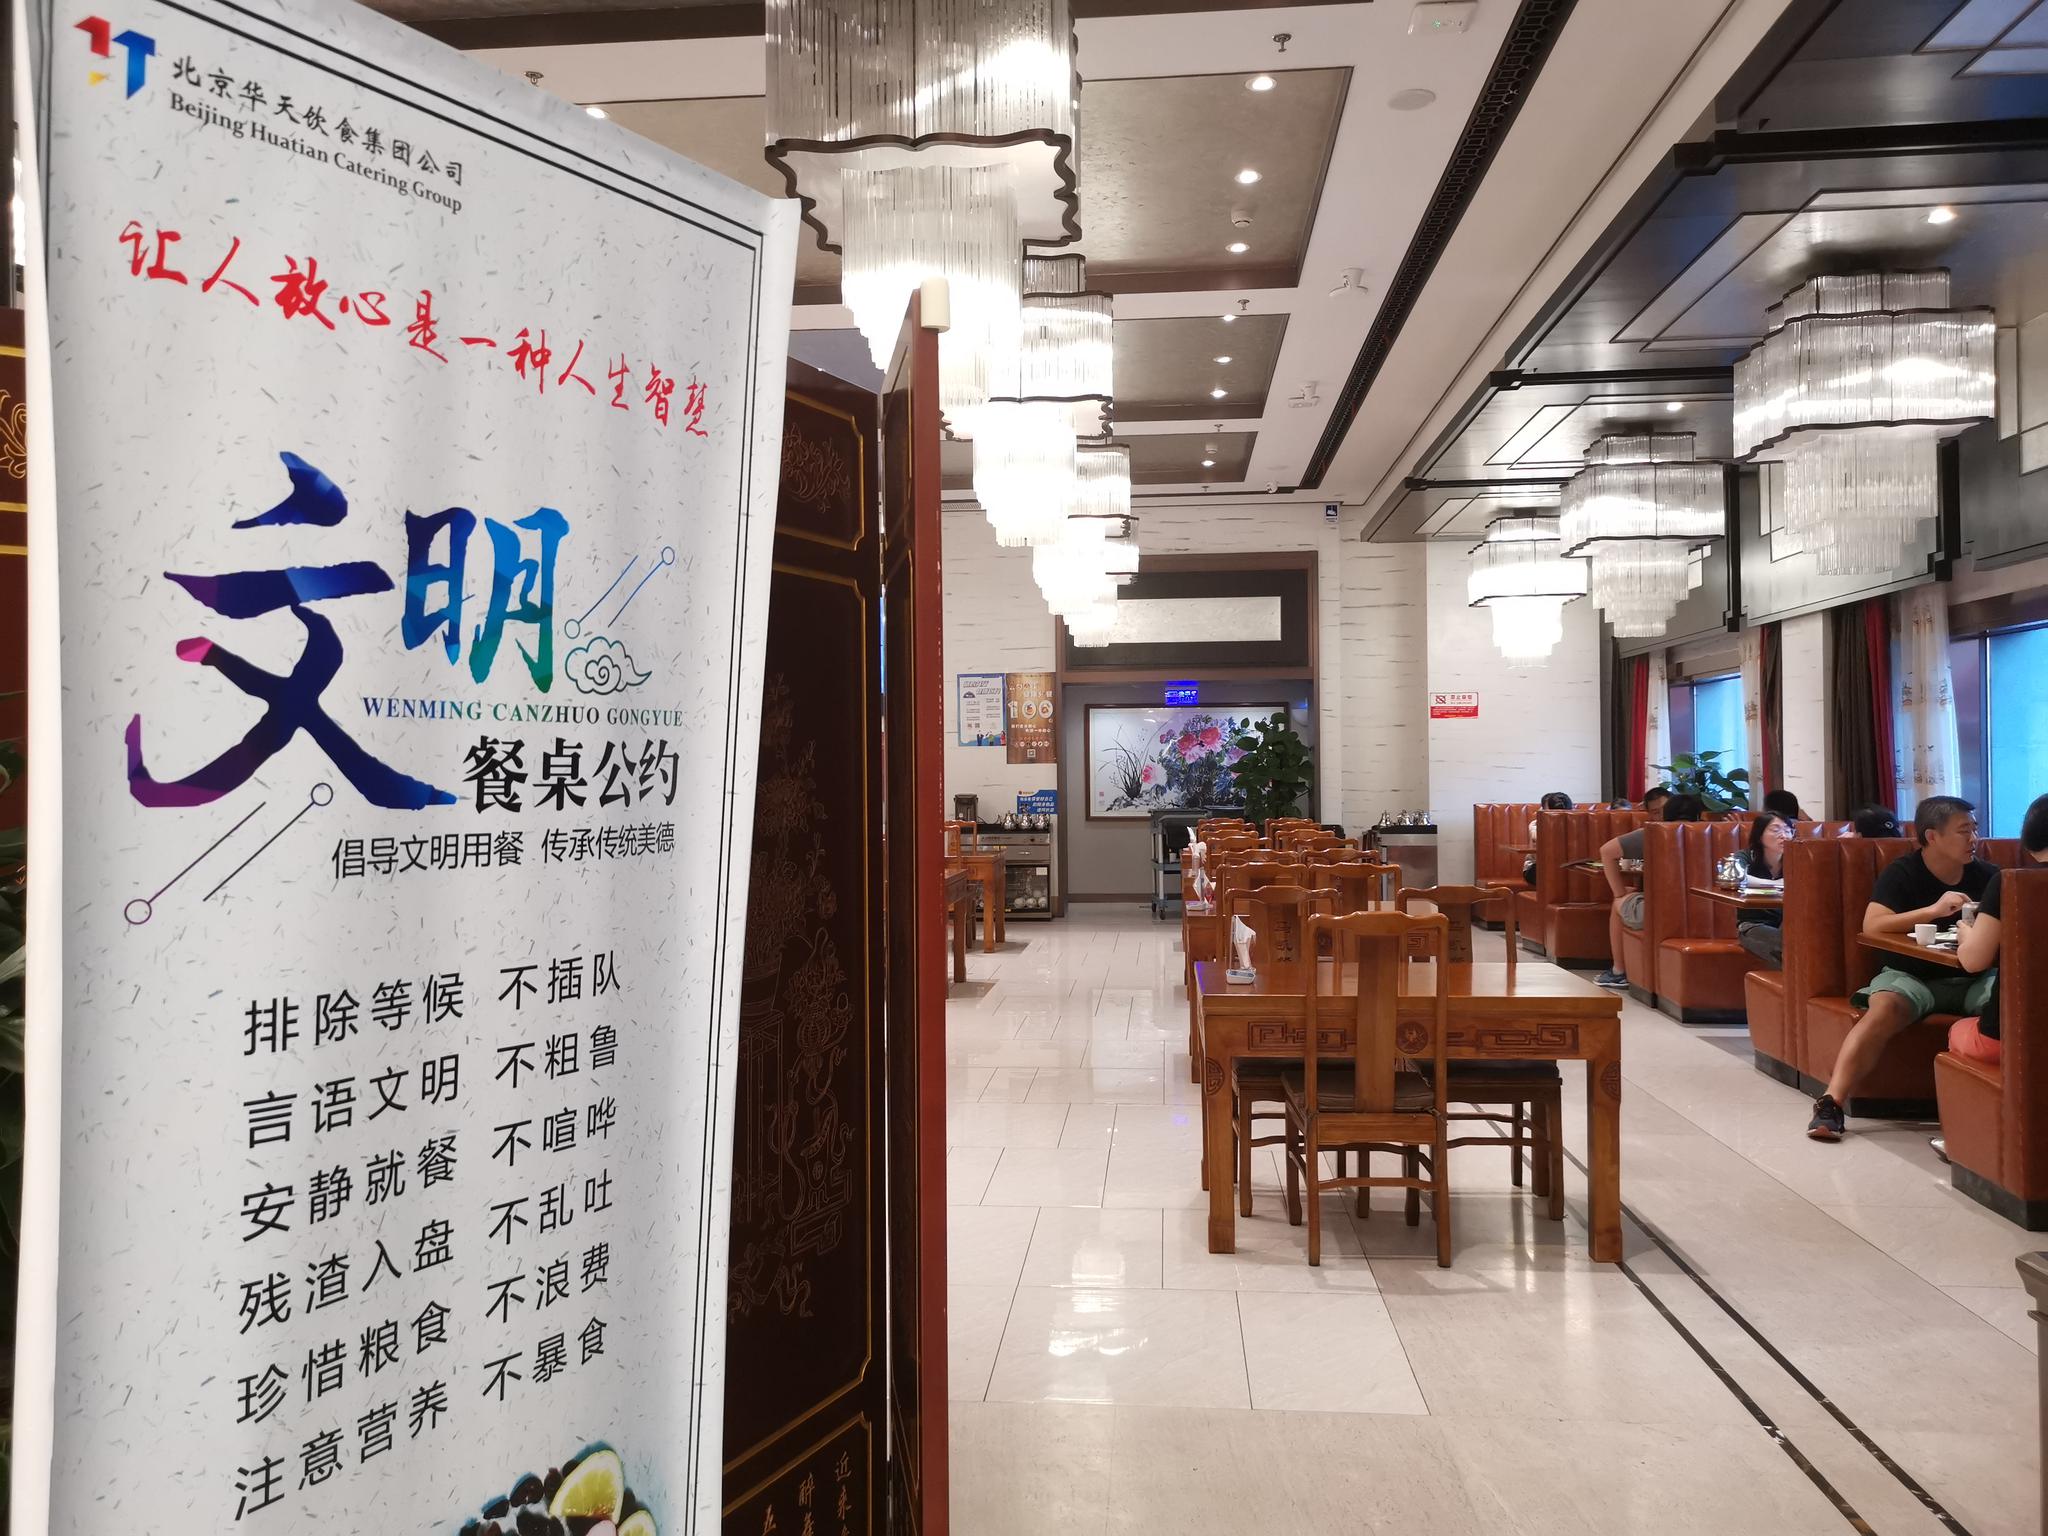  华天老字号餐厅门口都有“文明餐桌公约”，其中提示“珍惜粮食，不浪费”。新京报记者 吴宁 摄